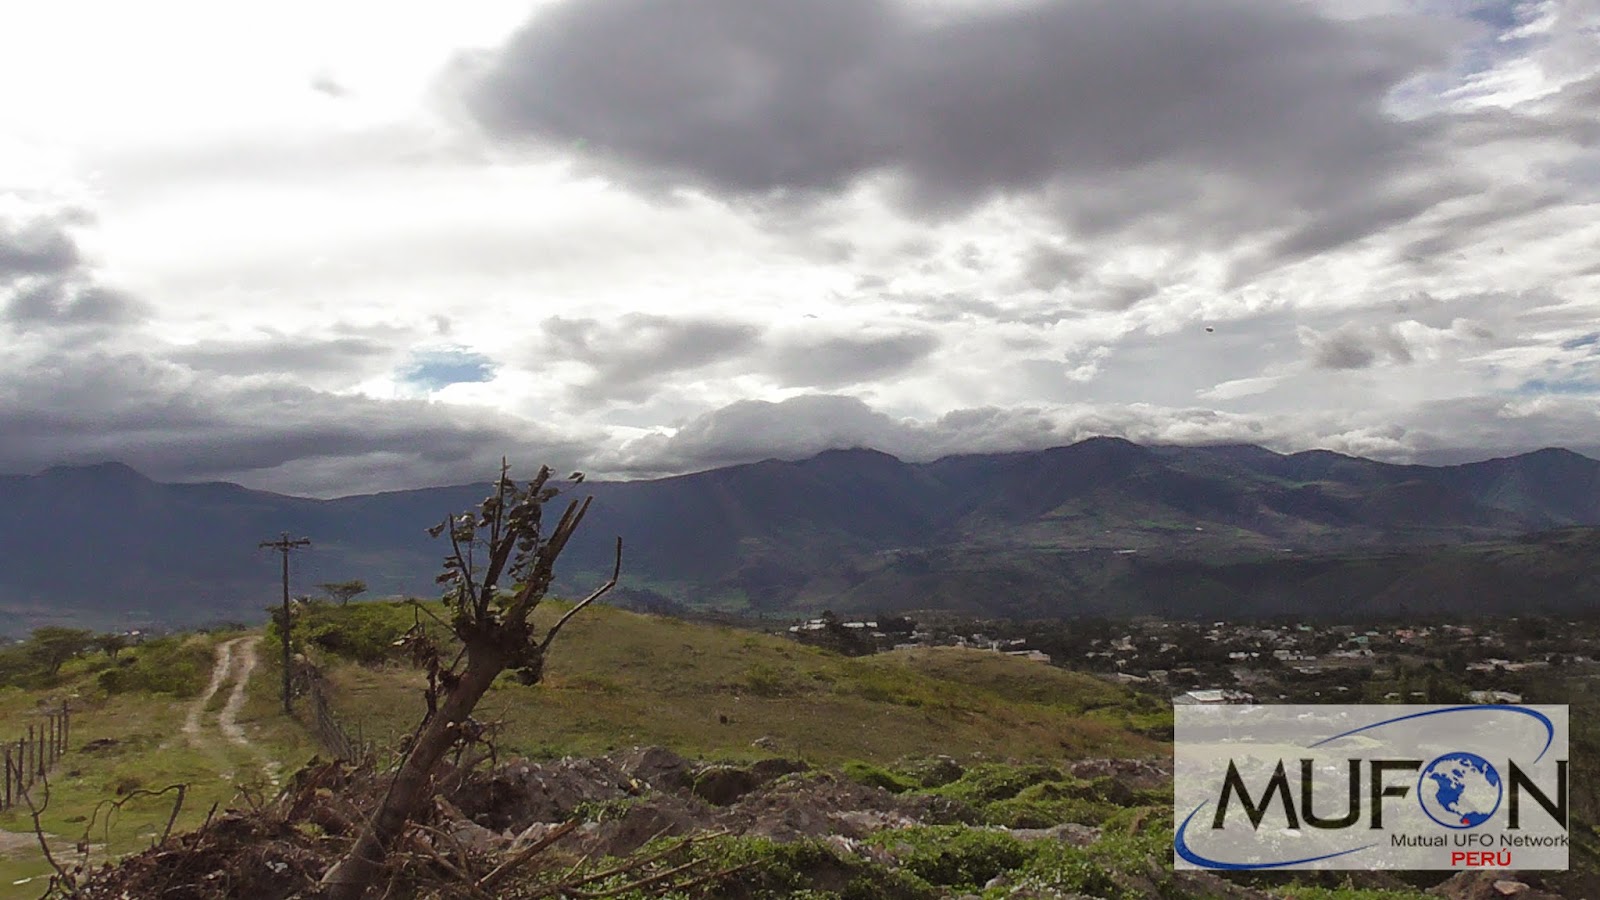 Fotografía tomada el día 26 de abril (2015) en provincia de Imbabura, Ecuador. Puede observarse un objeto aéreo anómalo de forma al parecer triangular.